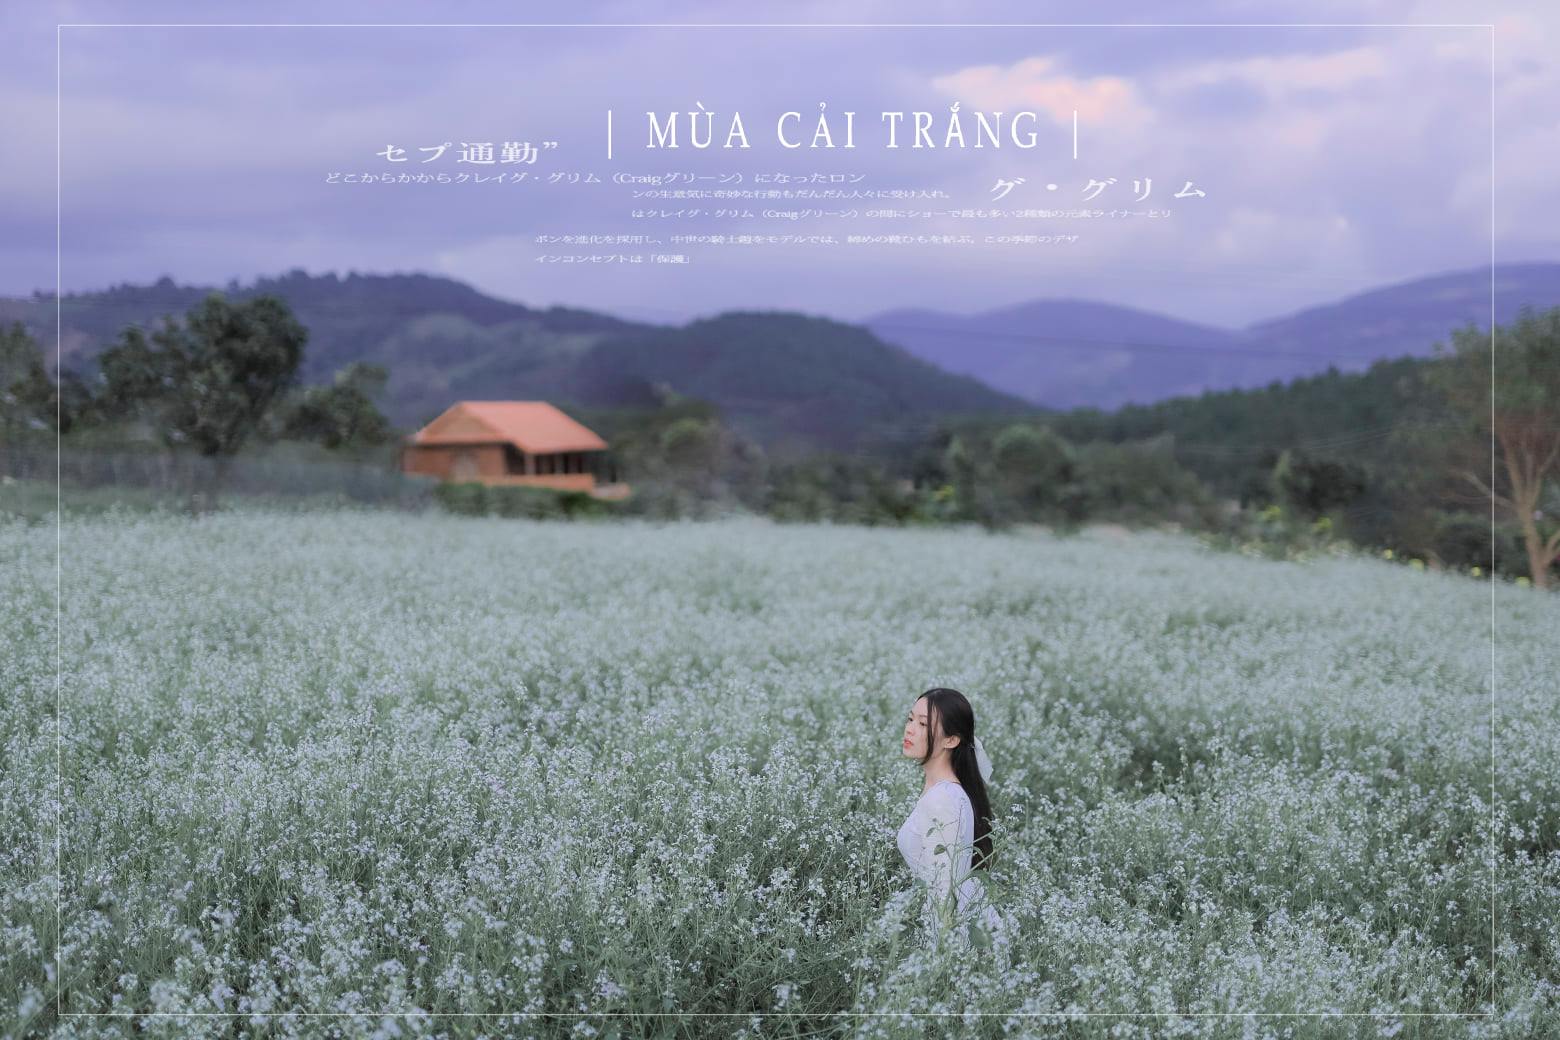 Mùa hoa cải trắng Đà Lạt, về xã Tu Tra, Tà Nung chụp bộ ảnh đẹp siêu thực